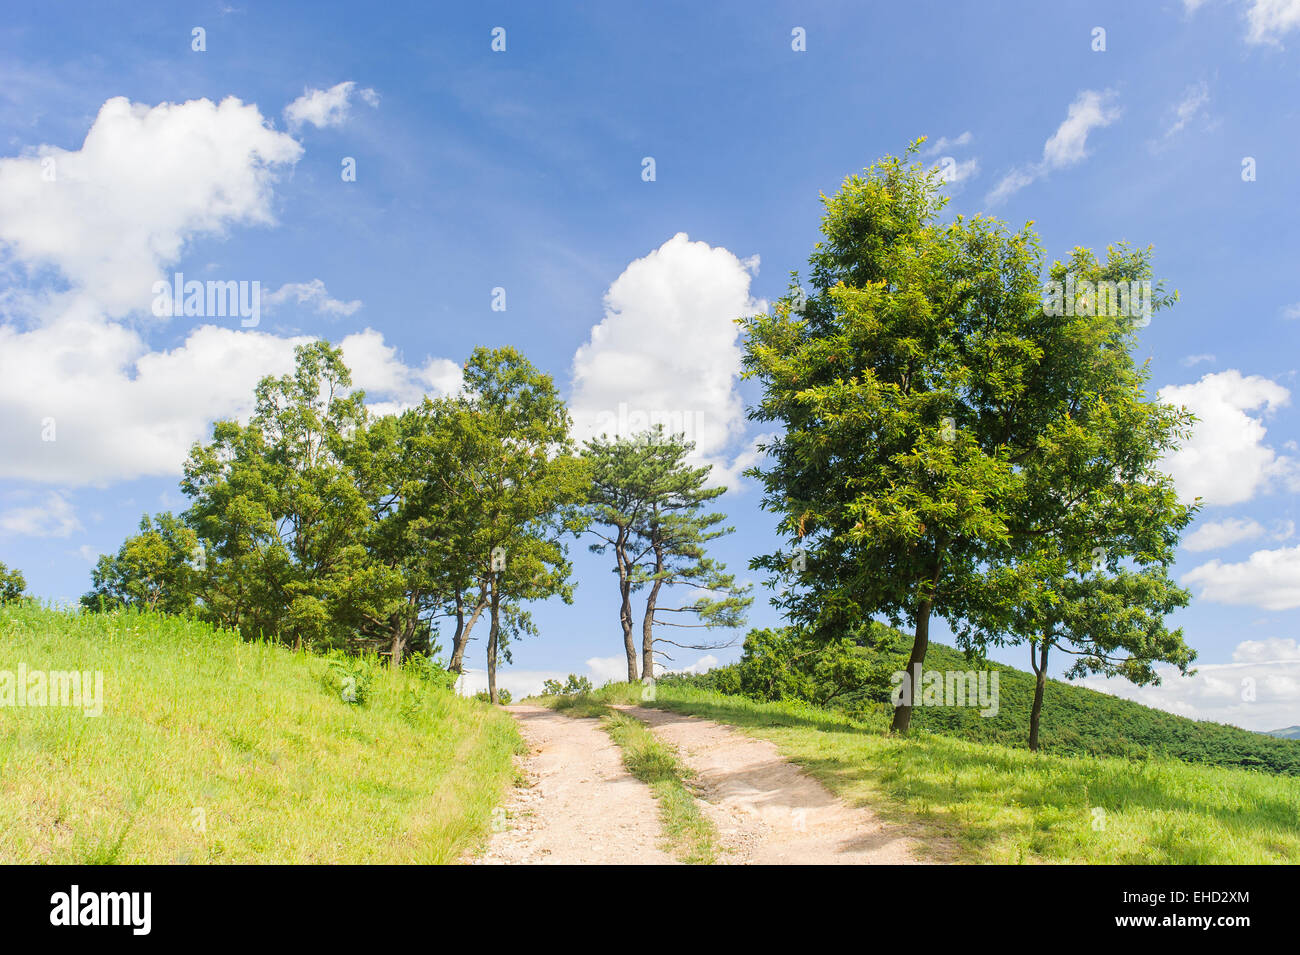 Verde césped y árboles con cielo azul en un día soleado Foto de stock